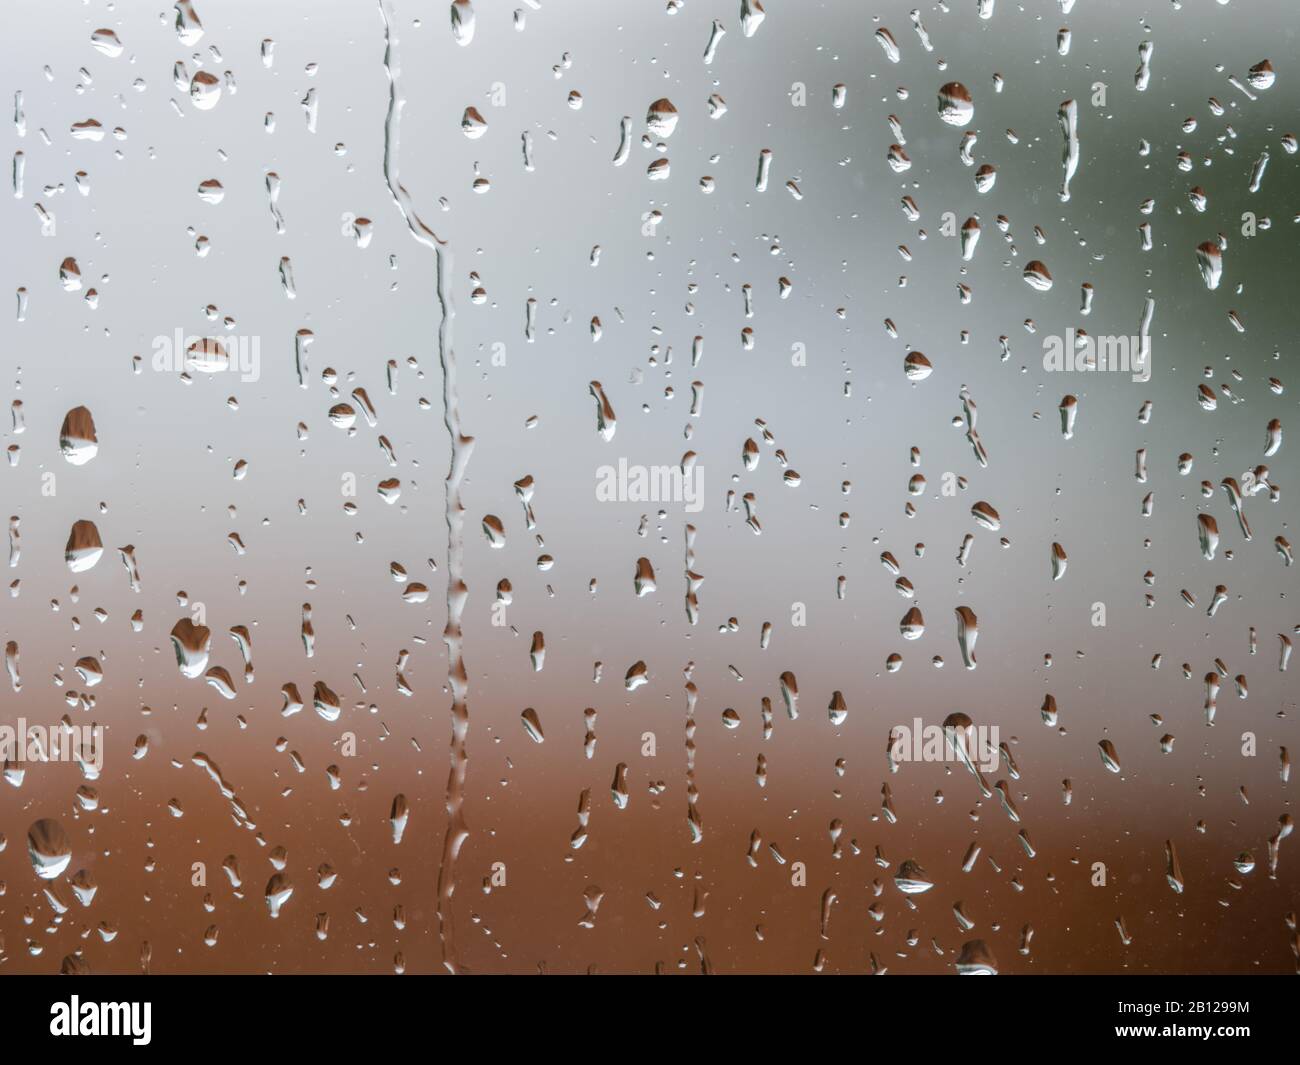 Regen fällt auf die Fensteroberfläche mit trübem Hintergrund . Natürliches Muster von Regentropfen isoliert auf verschwommenem Hintergrund. Stockfoto